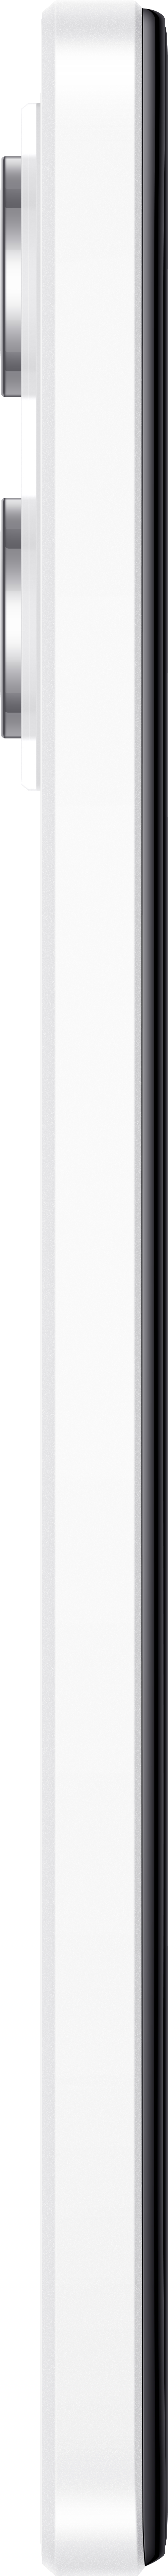 XIAOMI Redmi Note Dual GB 12 128 Pro Polar White 5G SIM